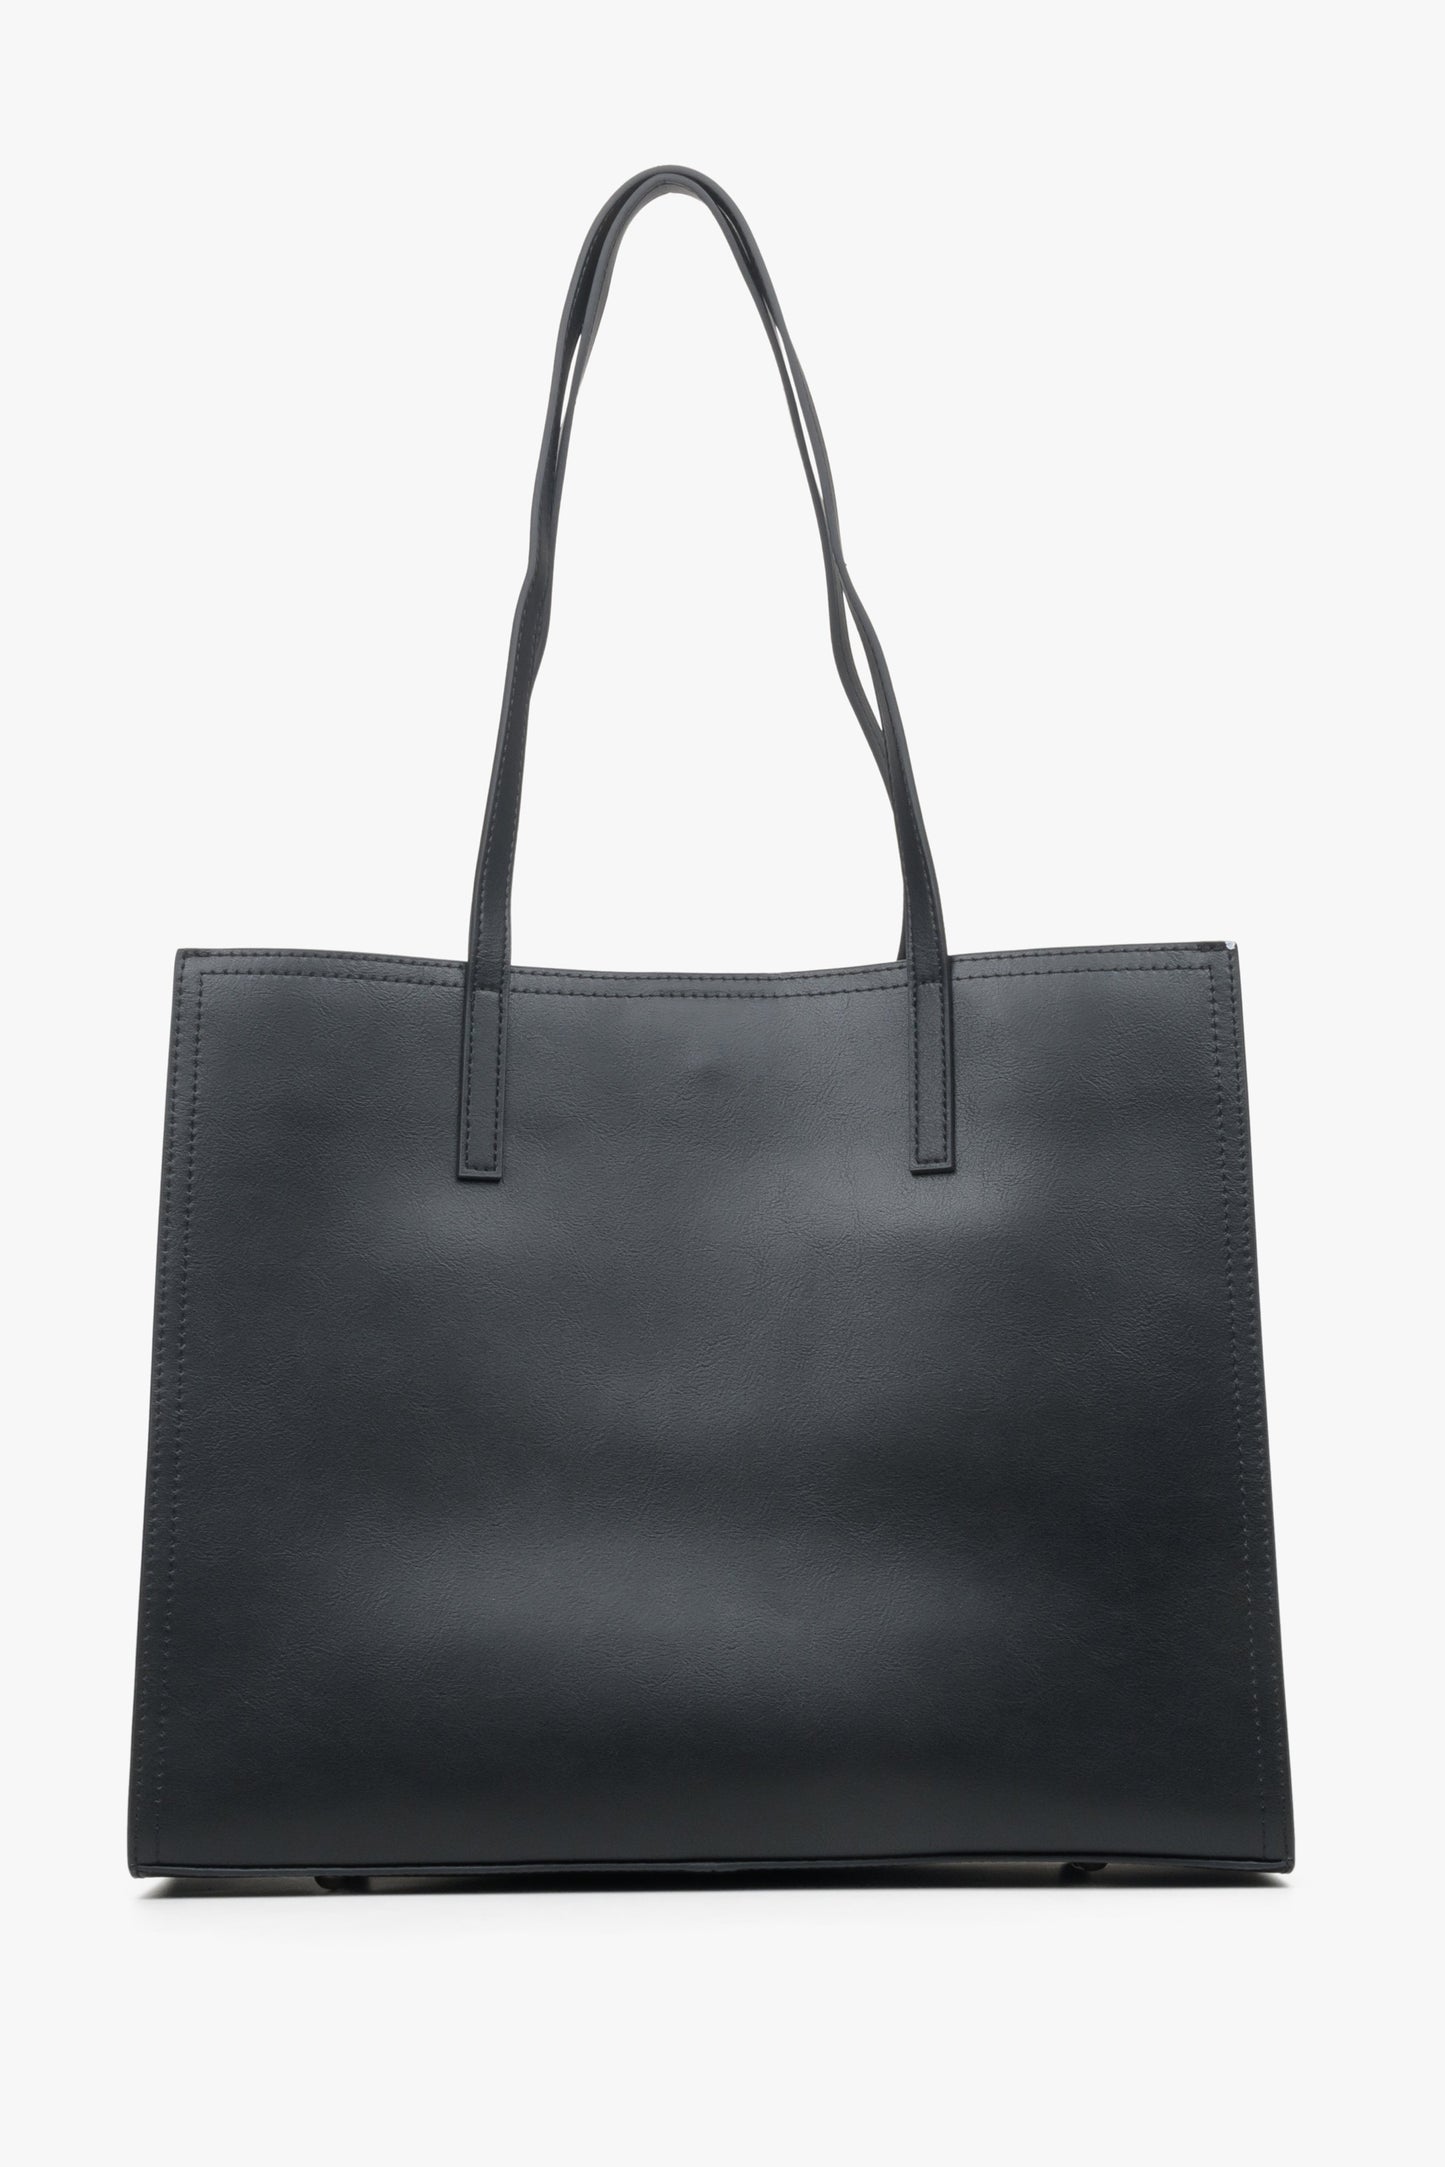 Damska, skórzana torebka typu shopper marki Estro w kolorze czarnym - tył.